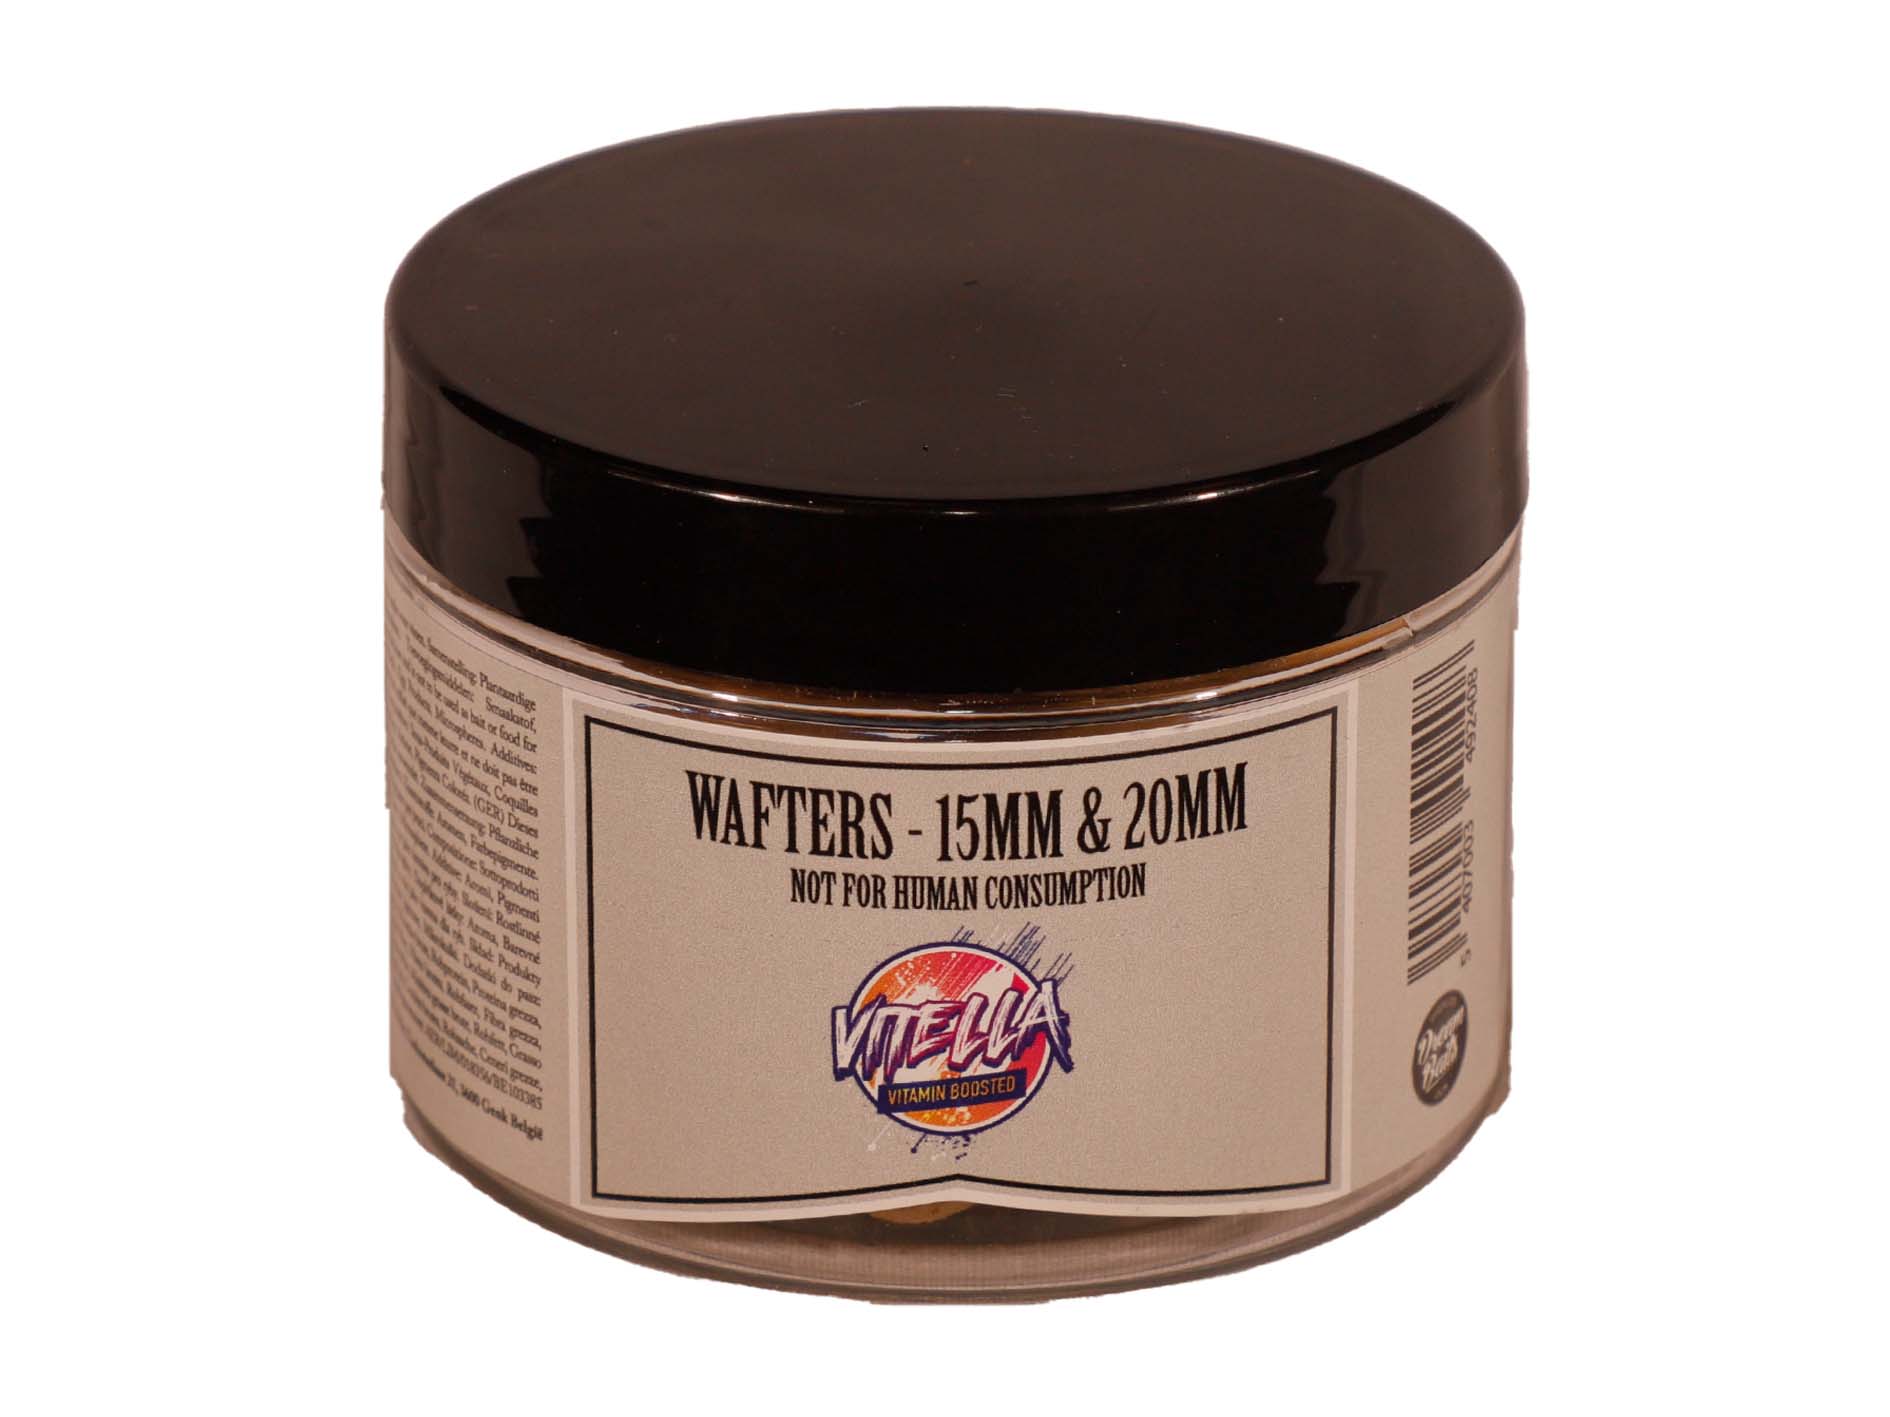 Wafters Dreambaits 15mm & 20mm Wafter Mix (50g) - Vitella